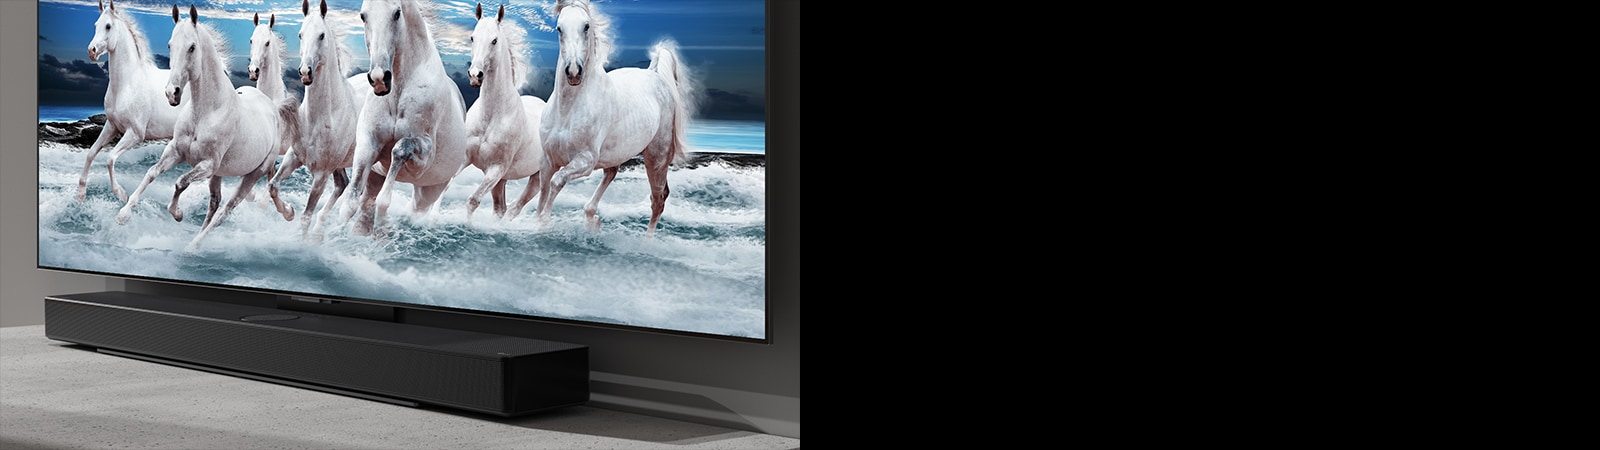 На белом столе расположены саундбар и телевизор, а на экране телевизора показано 7 белых лошадей.